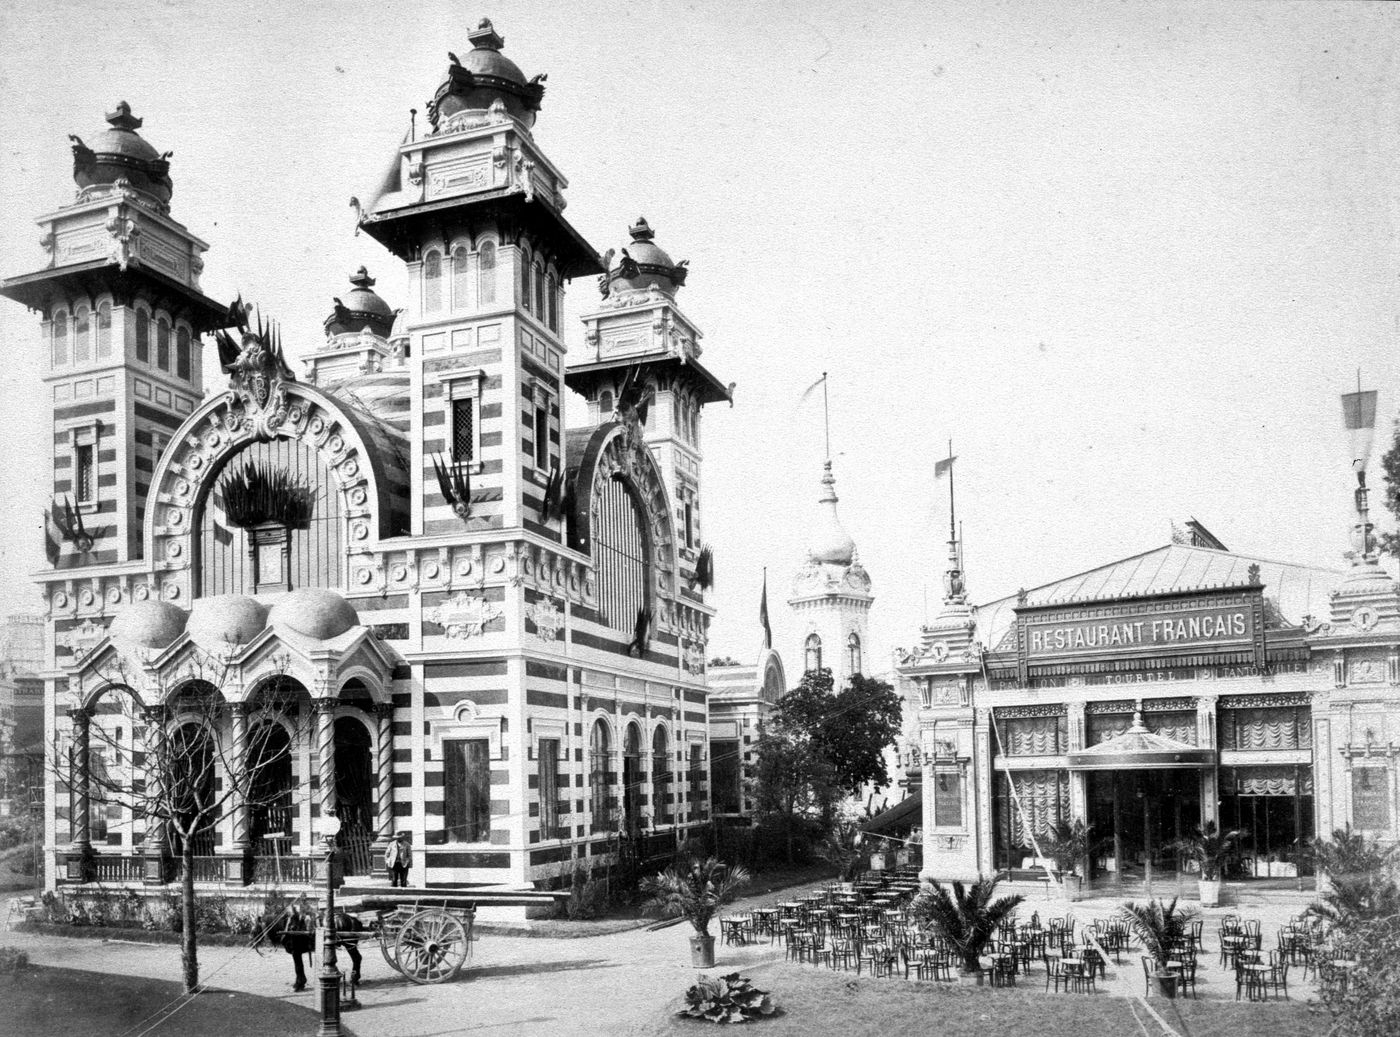 Exposition universelle de 1889 (Paris, France): View of exterior of Bolivian Pavillon and Restaurant français